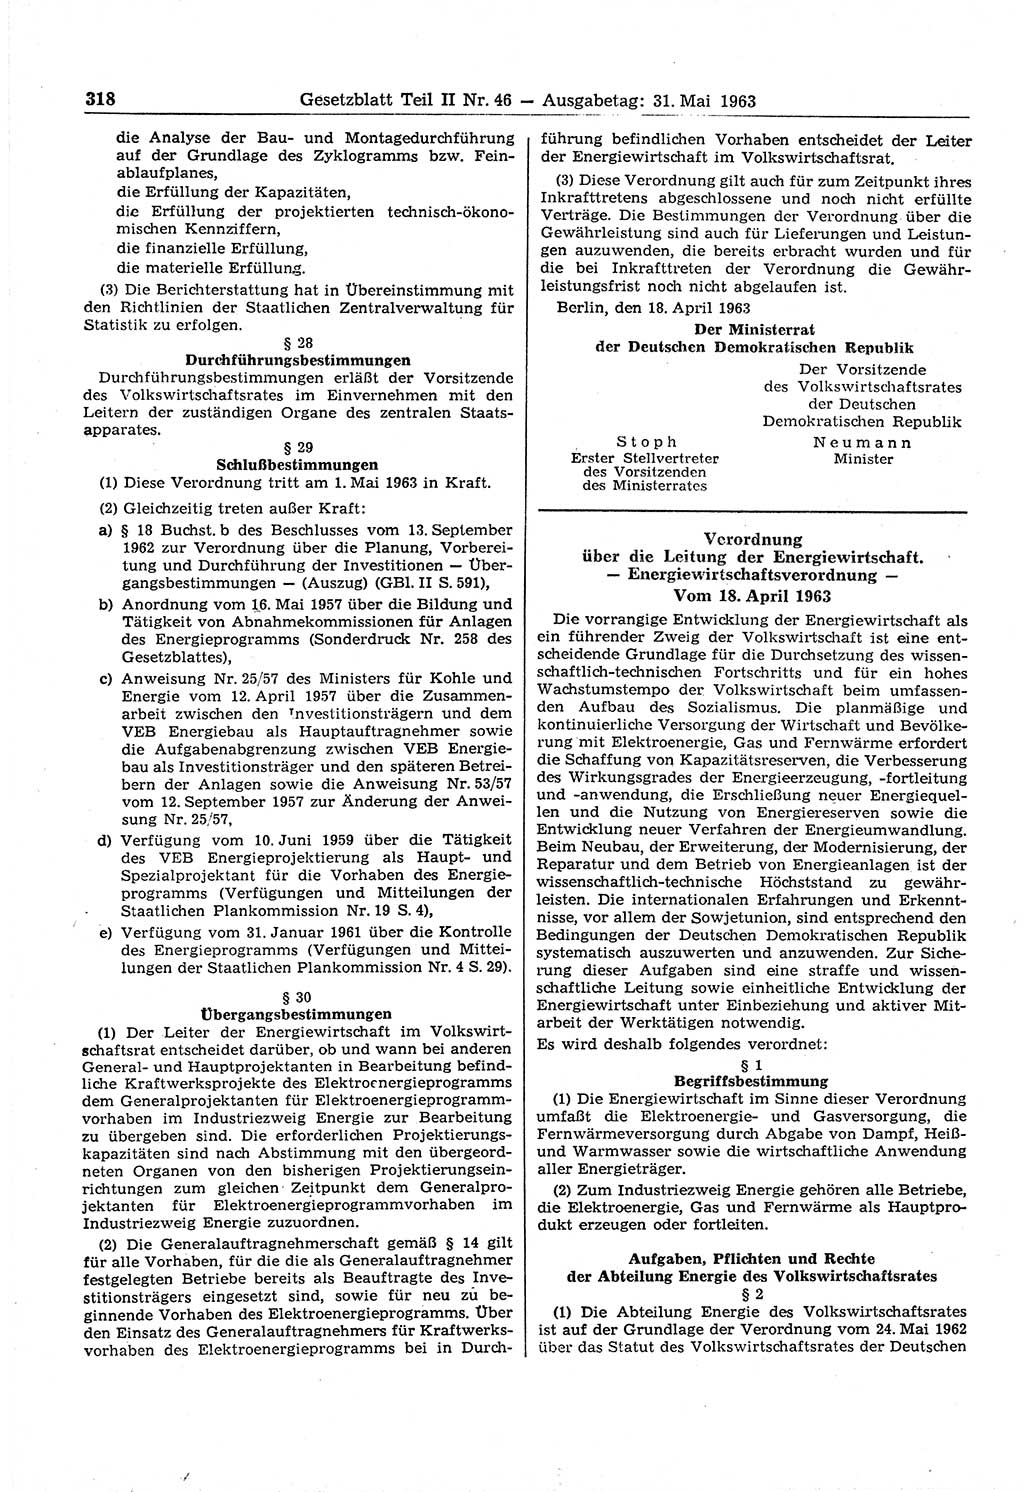 Gesetzblatt (GBl.) der Deutschen Demokratischen Republik (DDR) Teil ⅠⅠ 1963, Seite 318 (GBl. DDR ⅠⅠ 1963, S. 318)